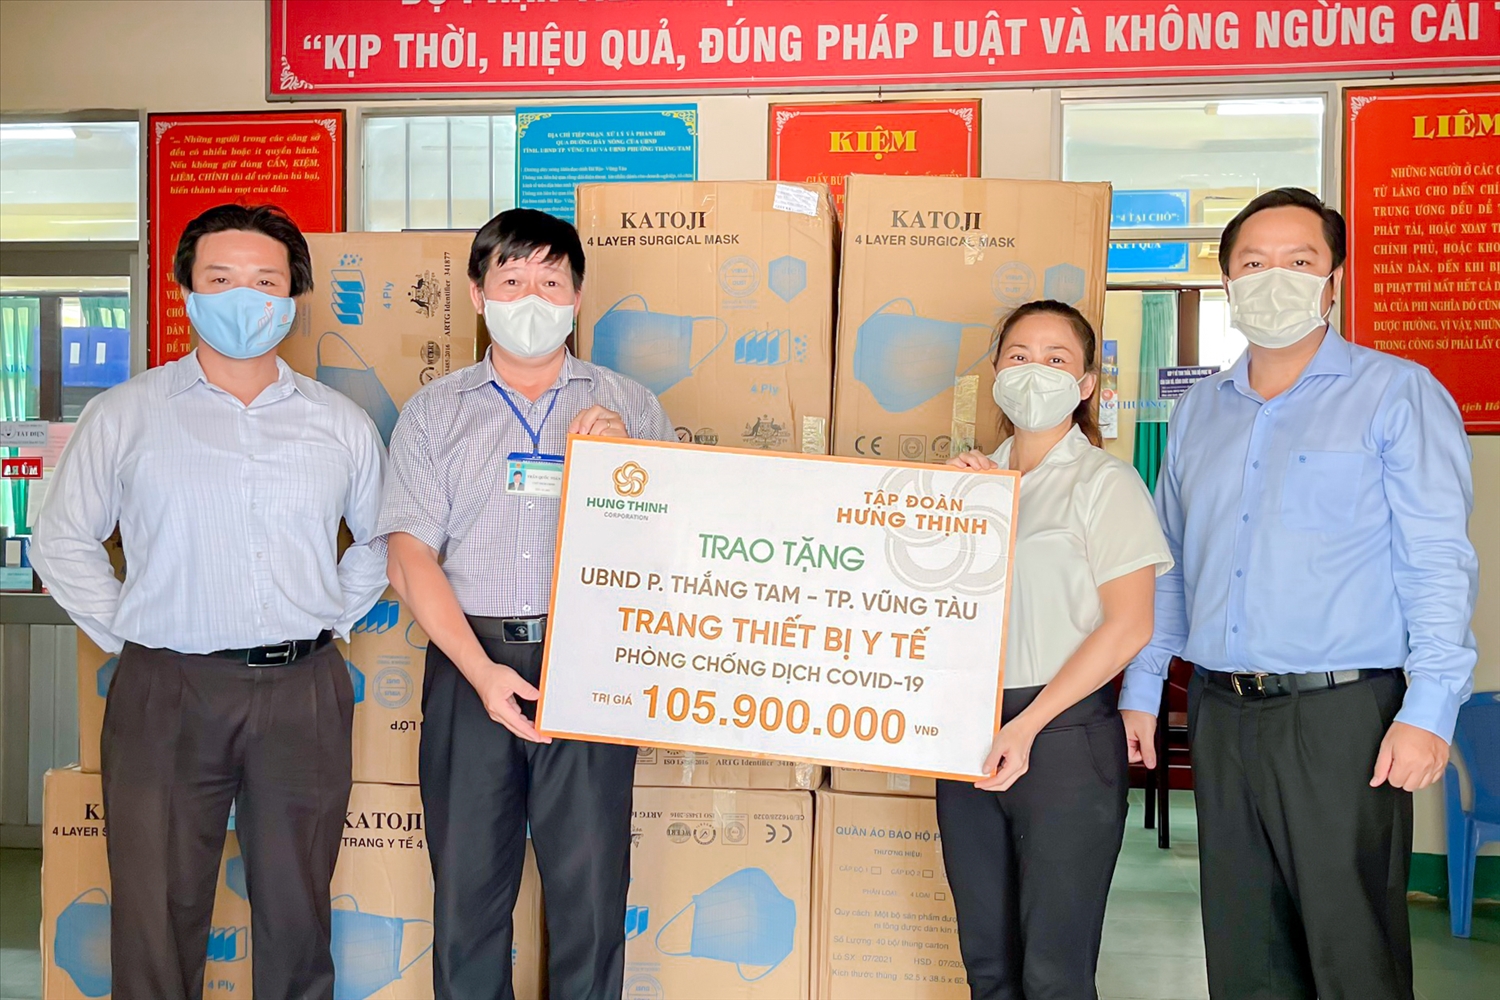 Đại diện Tập đoàn Hưng Thịnh trao tặng gói trang thiết bị y tế cho UBND phường Thắng Tam, TP. Vũng Tàu